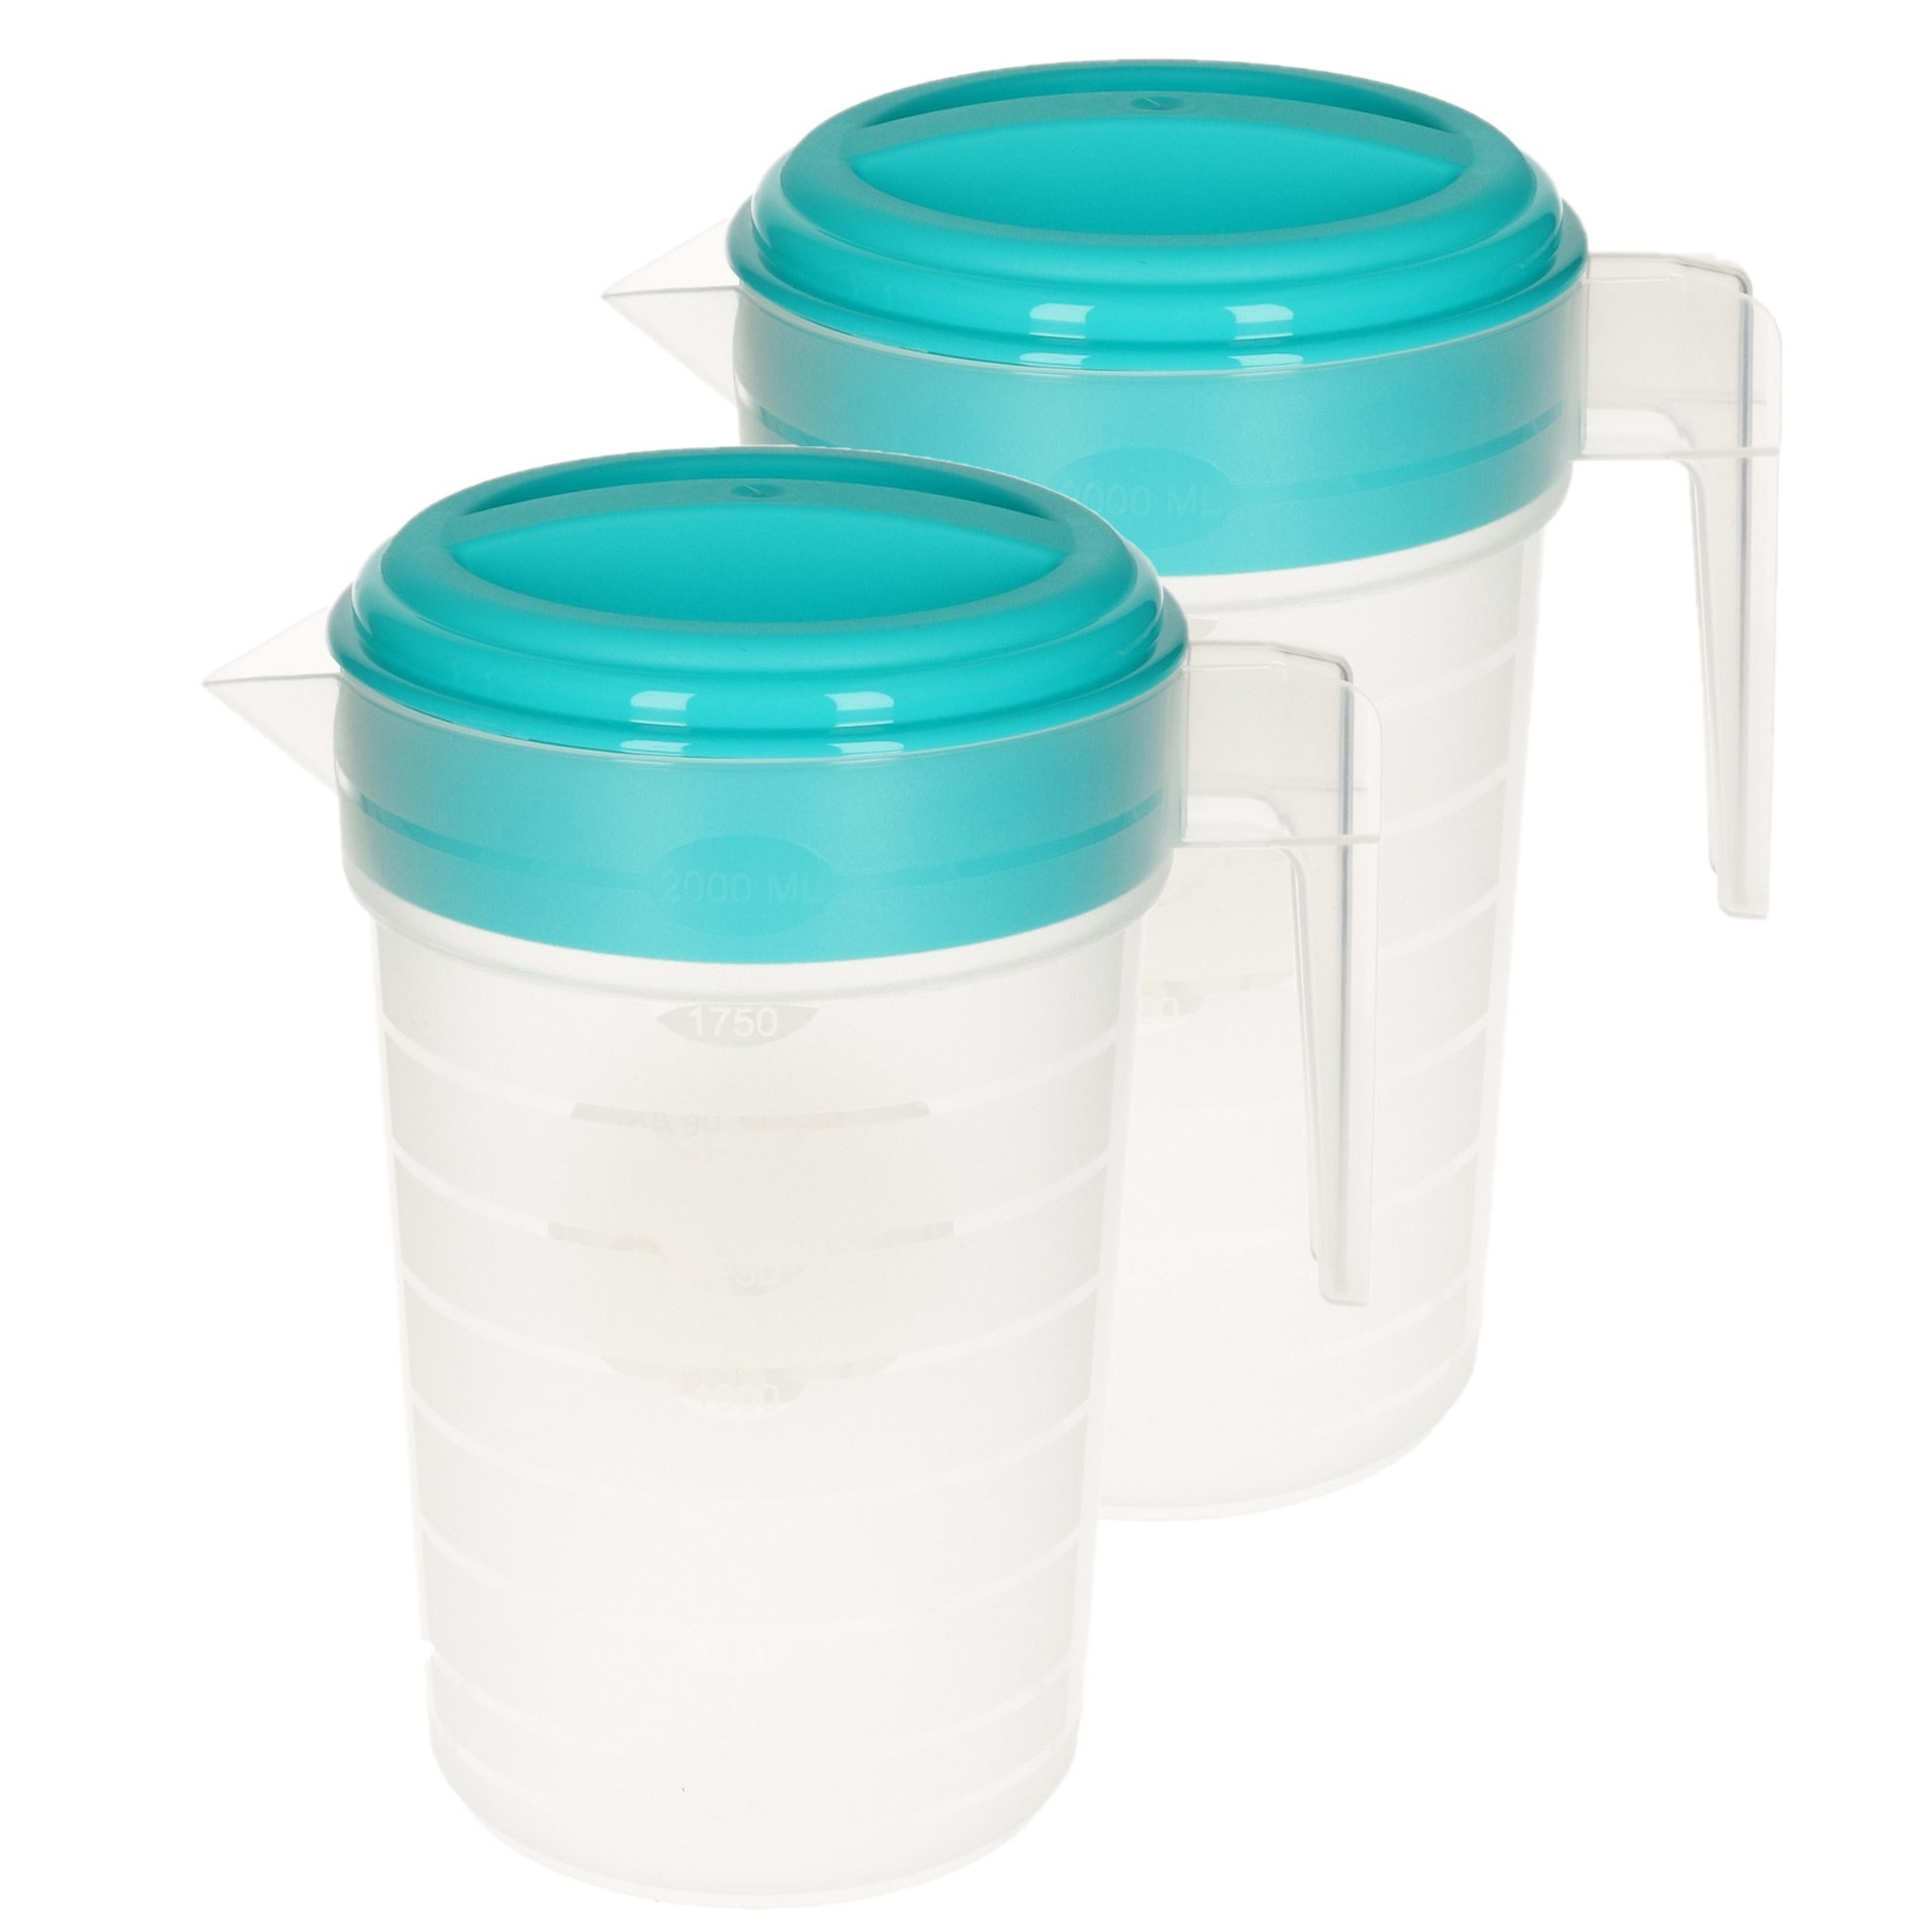 PlasticForte 2x stuks waterkan/sapkan transparant/blauw met deksel 2 liter kunststof -